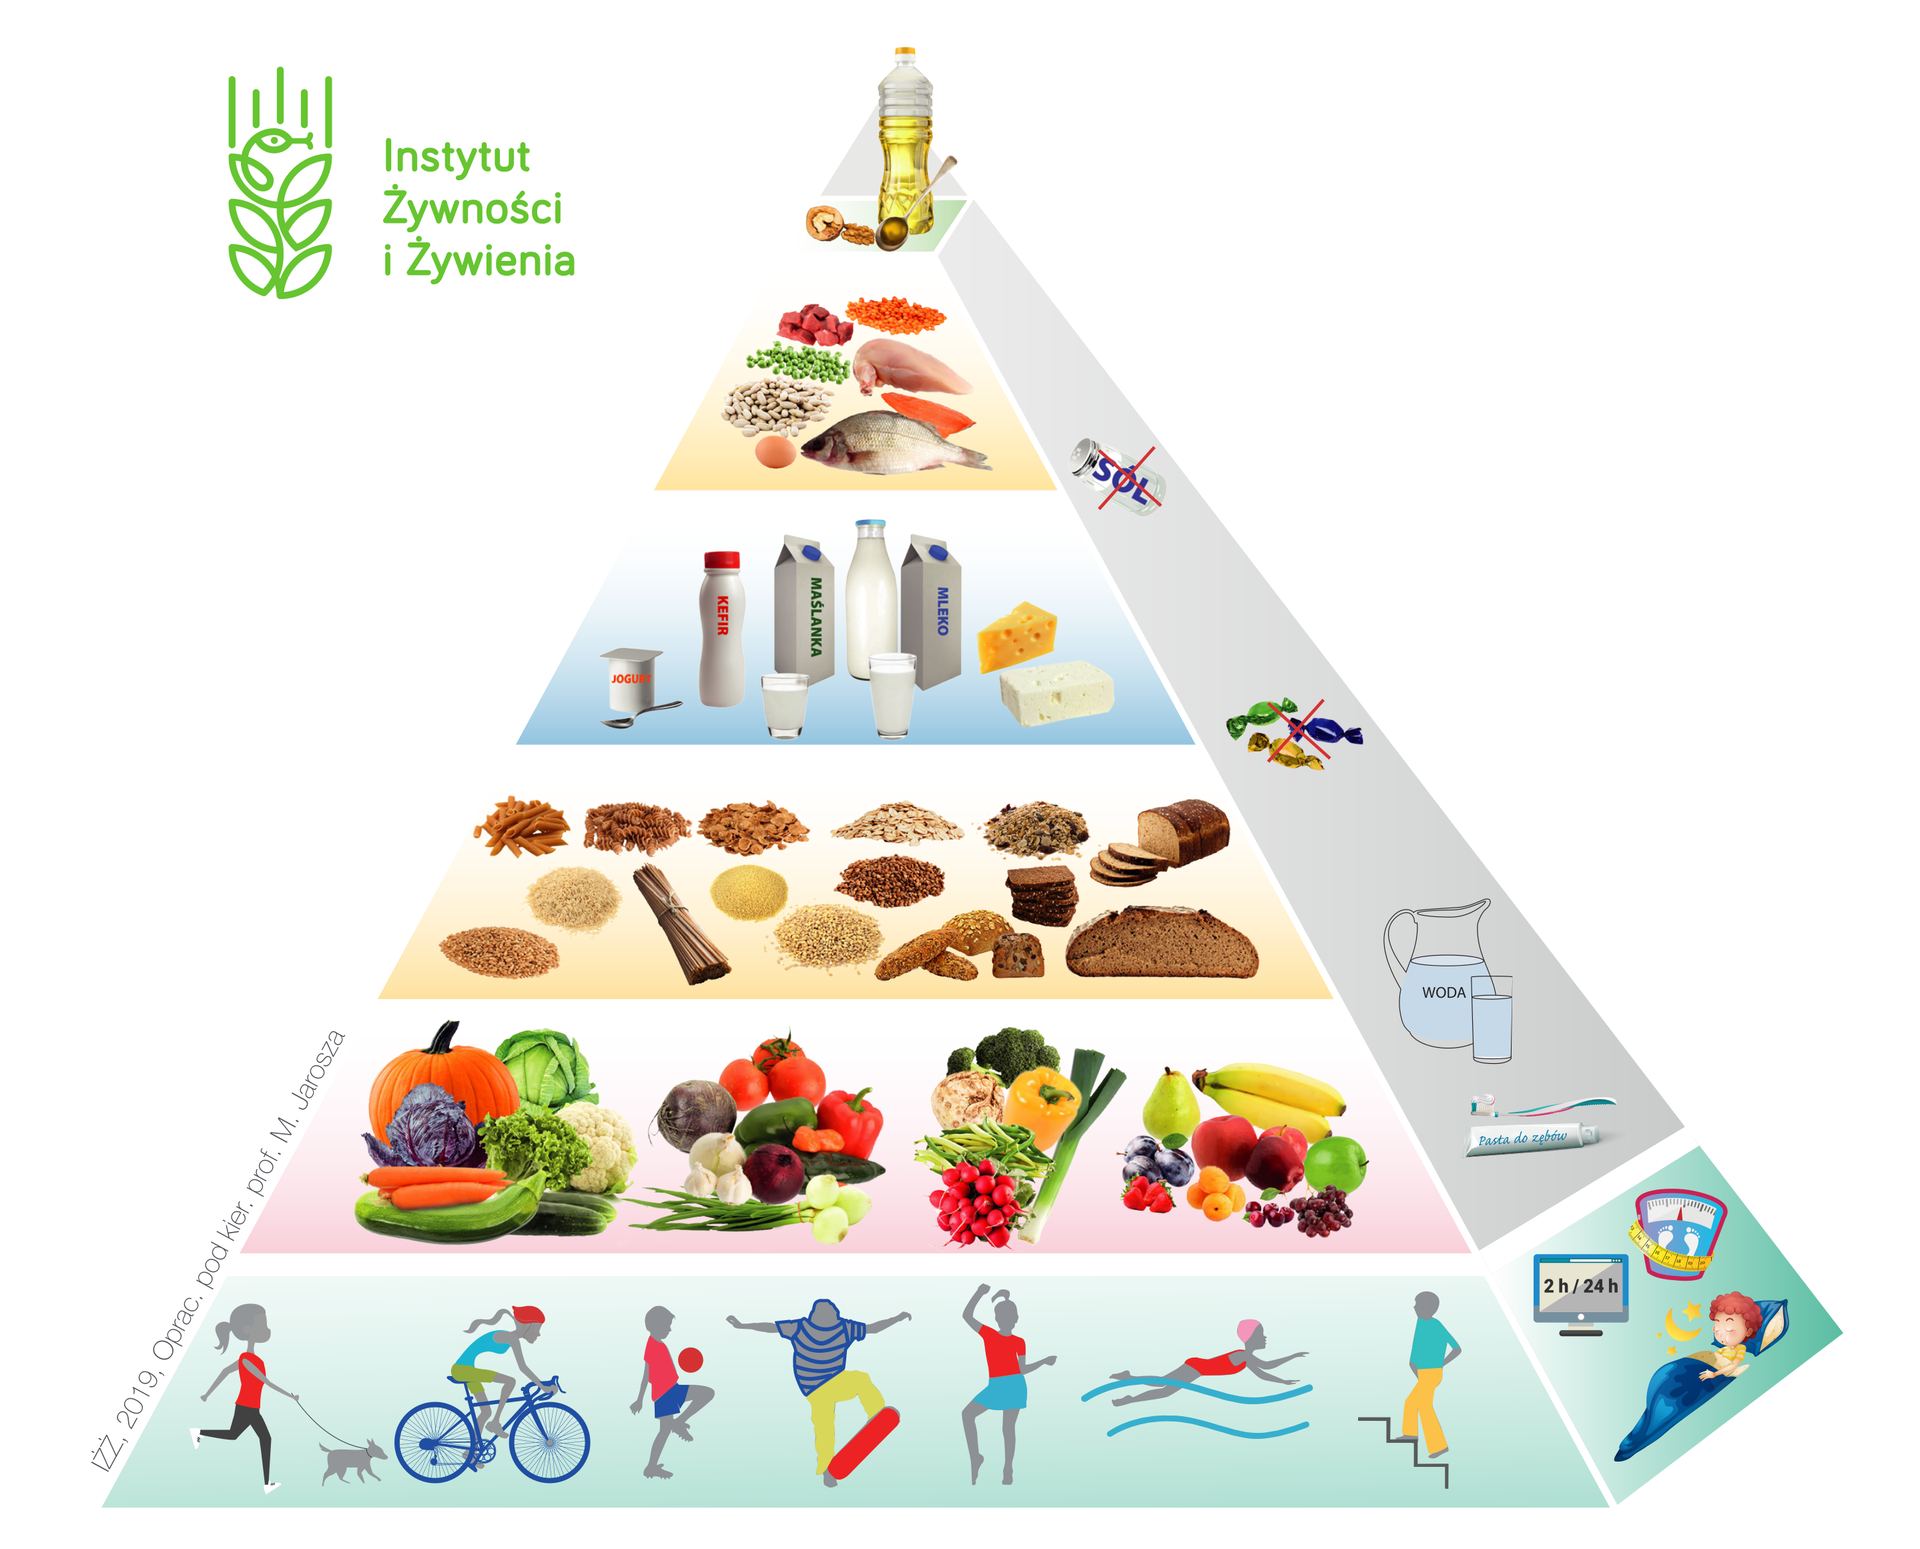 Ilustracja przedstawia piramidę żywieniową. Podstawę piramidy stanowi aktywność fizyczna, zdrowy sen, utrzymywanie prawidłowej masy ciała oraz ograniczanie korzystania z urządzeń elektronicznych. Na wyższym poziomie znajdują się świeże owoce i warzywa, spożywanie odpowiedniej ilości wody oraz higiena osobista. Na następnym poziomie znajdują się pełnoziarniste produkty zbożowe. Na kolejnym nabiał i słodycze. Słodycze są przekreślone. Powyżej: nasiona, czerwone mięso, ryby, jajka i sól. Sól jest przekreślona. Na samym szczycie piramidy znajdują się te produkty, które powinno spożywać się jak najrzadziej: tłuszcze zwierzęce, oleje i orzechy.